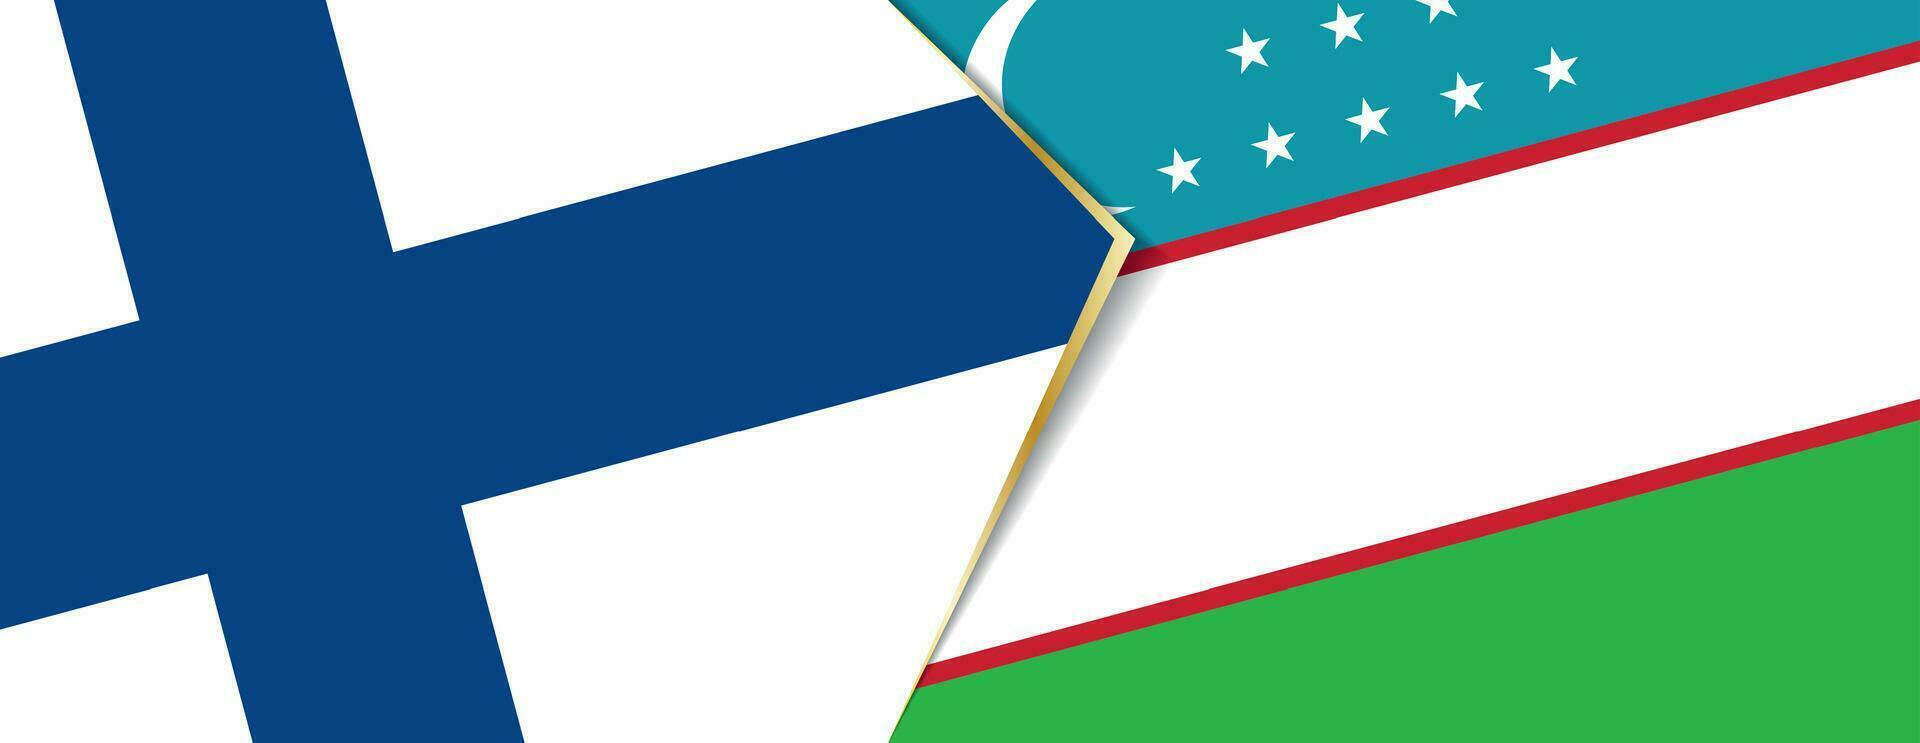 finland och uzbekistan flaggor, två vektor flaggor.